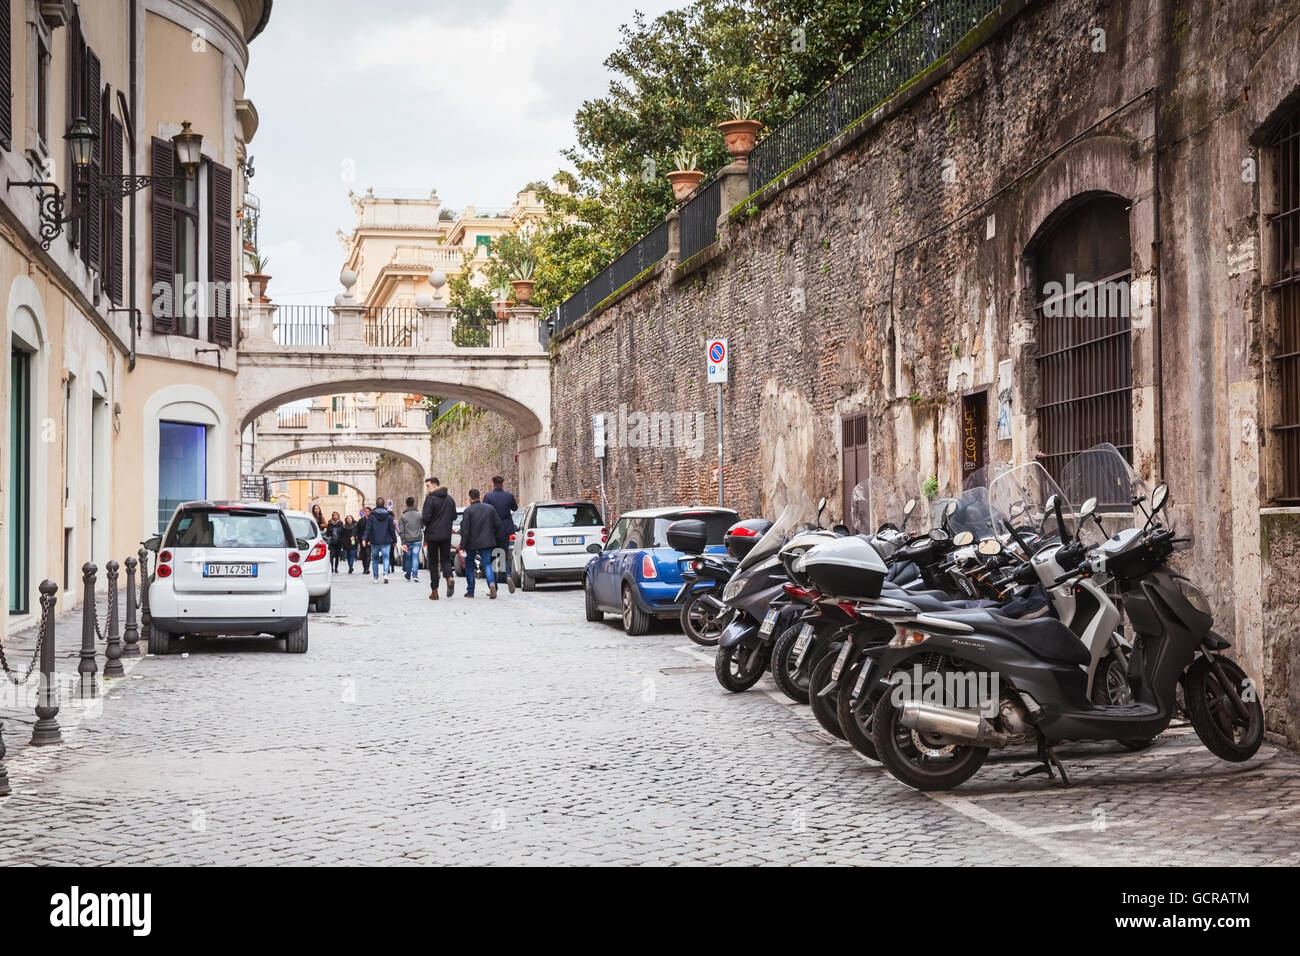 Rom, Italien - 13. Februar 2016: Gewöhnliche Straße im alten Rom mit parkenden Autos und Motorräder Stockfoto